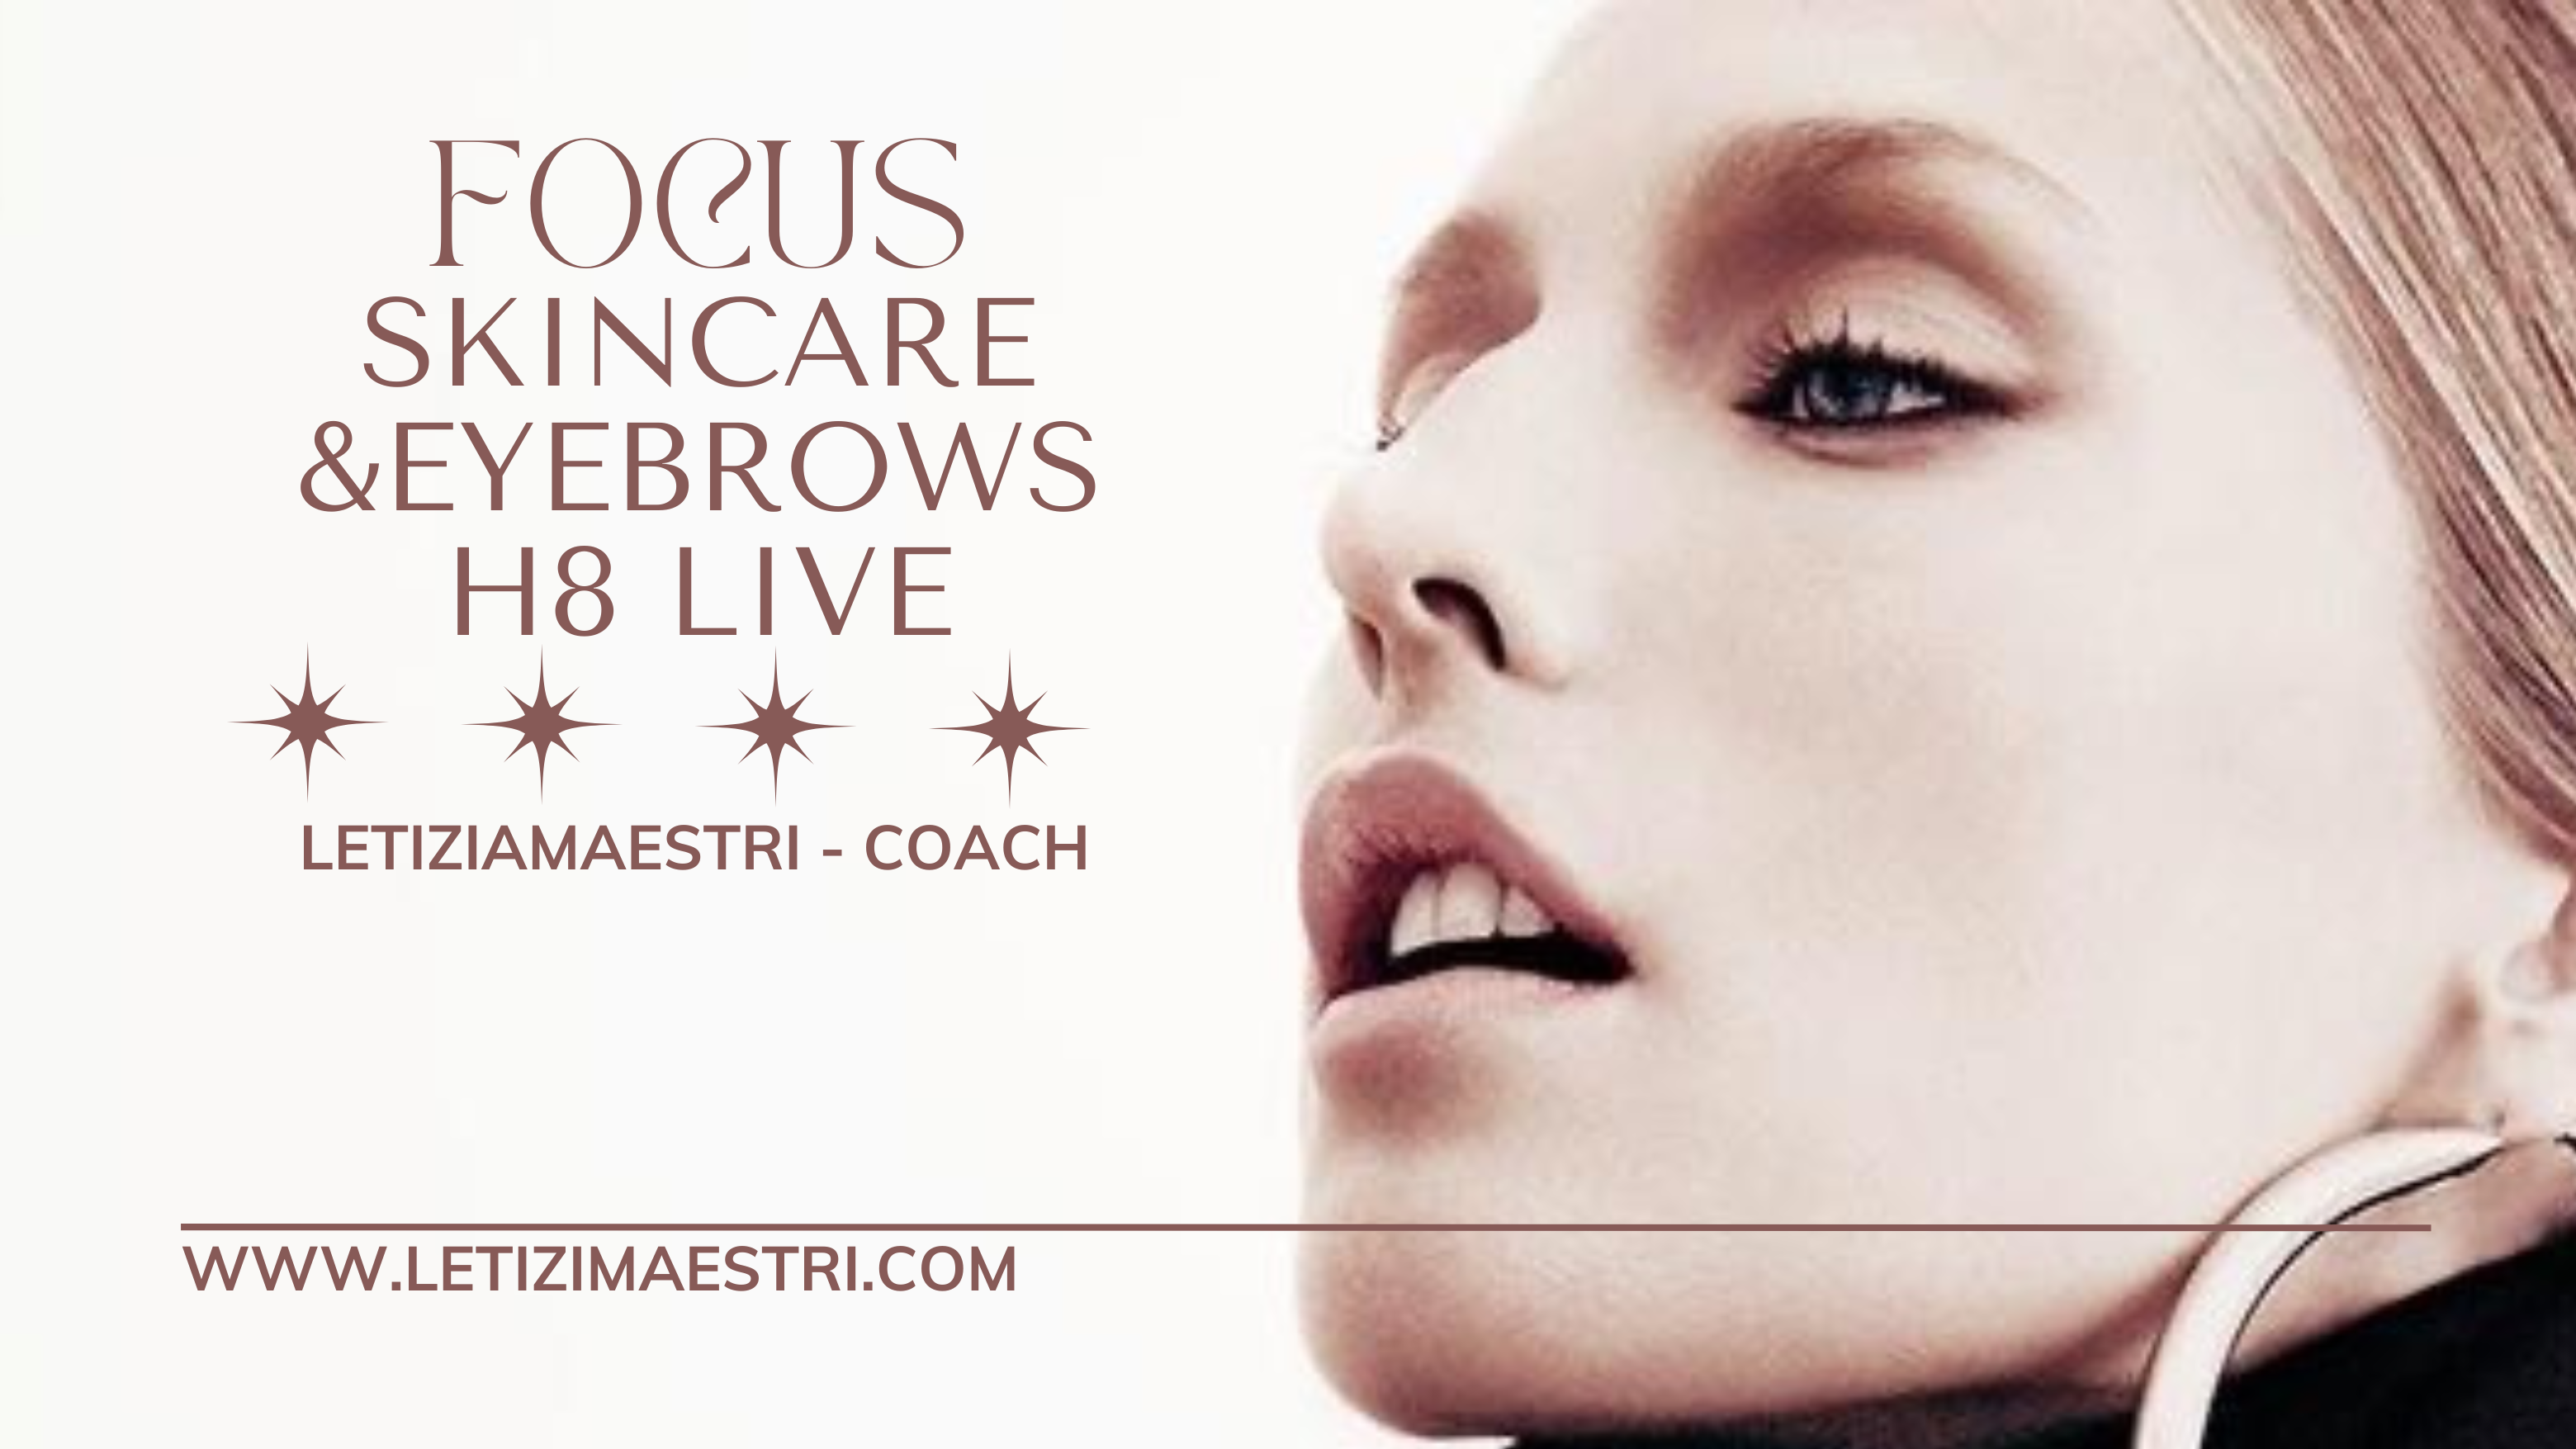 focus-skincare-eyebrows-letiziamaestri-makeup-coach-8h